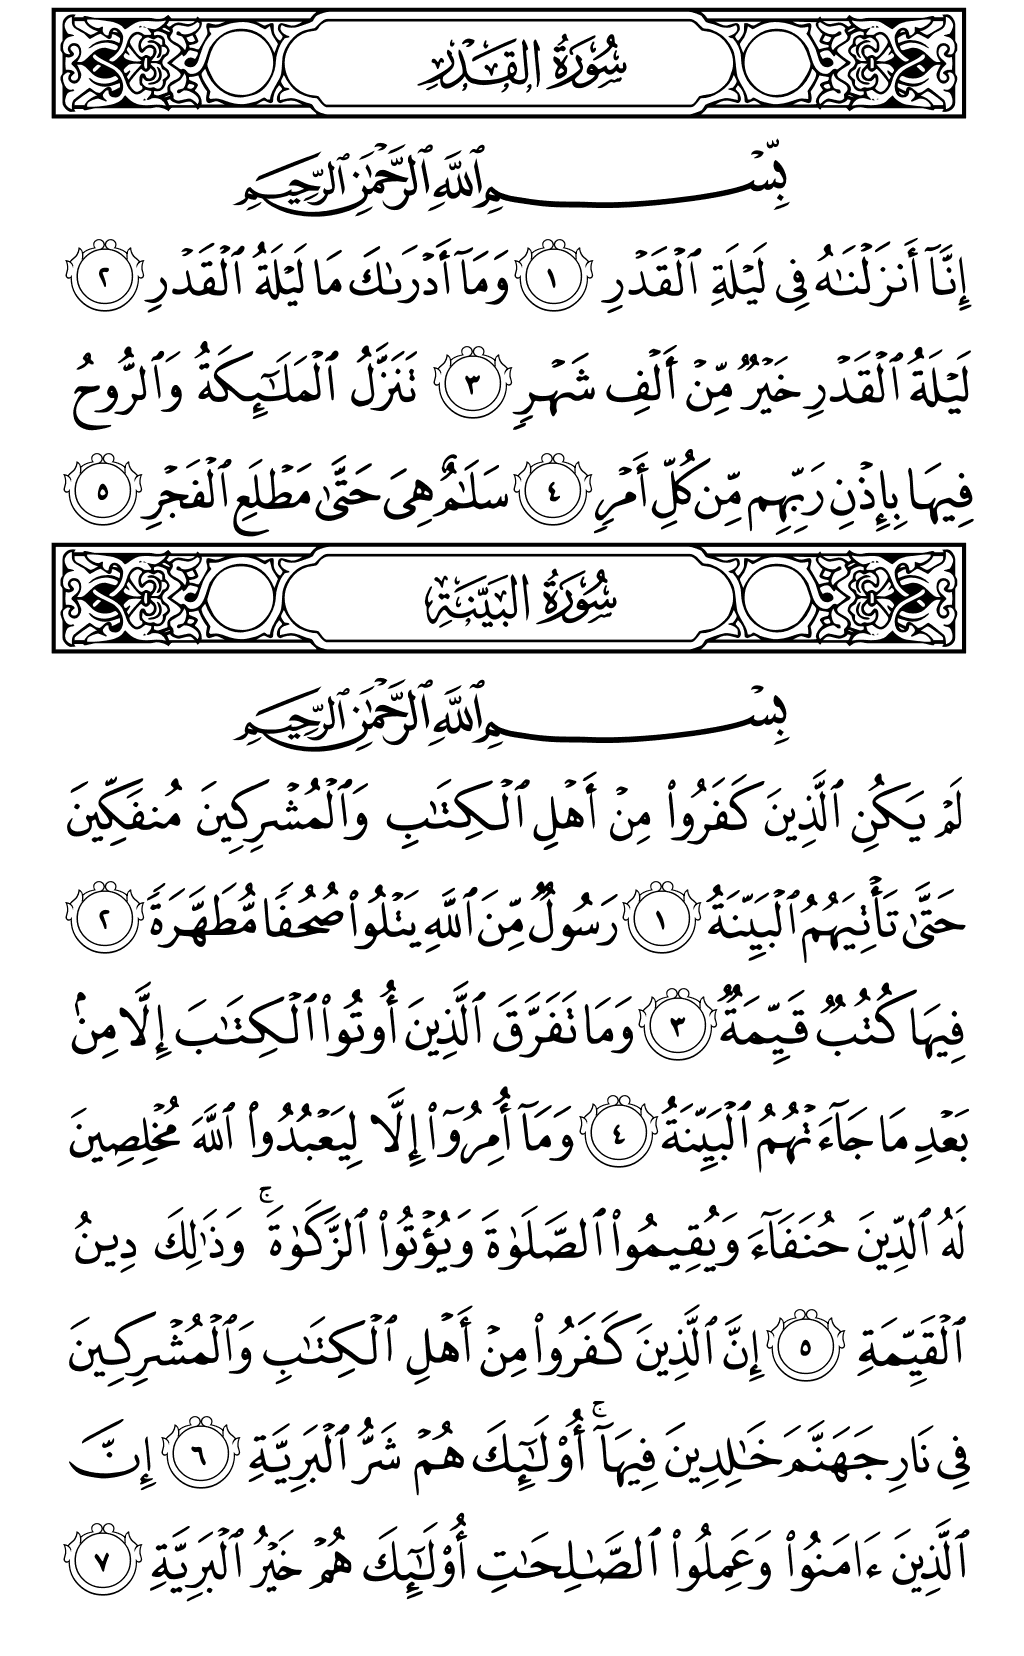 الصفحة رقم 598 من القرآن الكريم